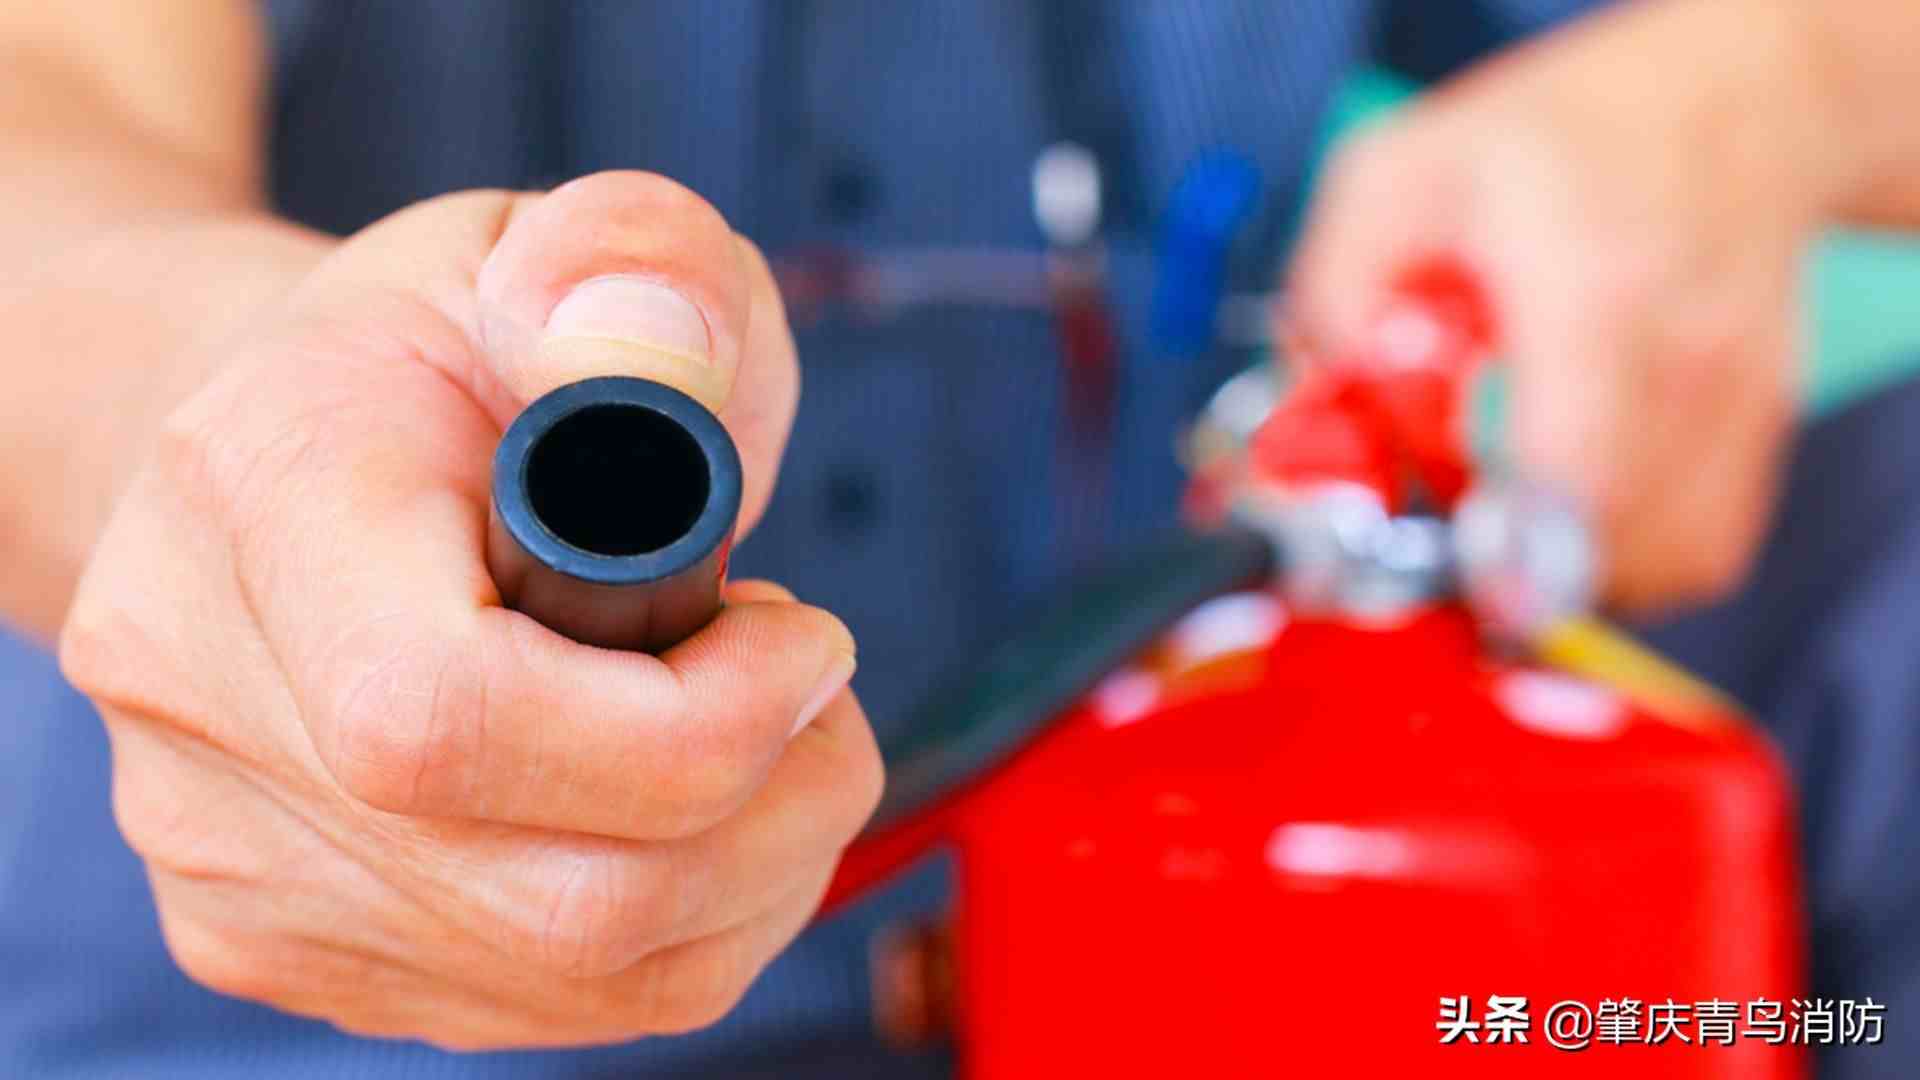 二氧化碳灭火器的使用方法 #肇庆消防# #青鸟消防#